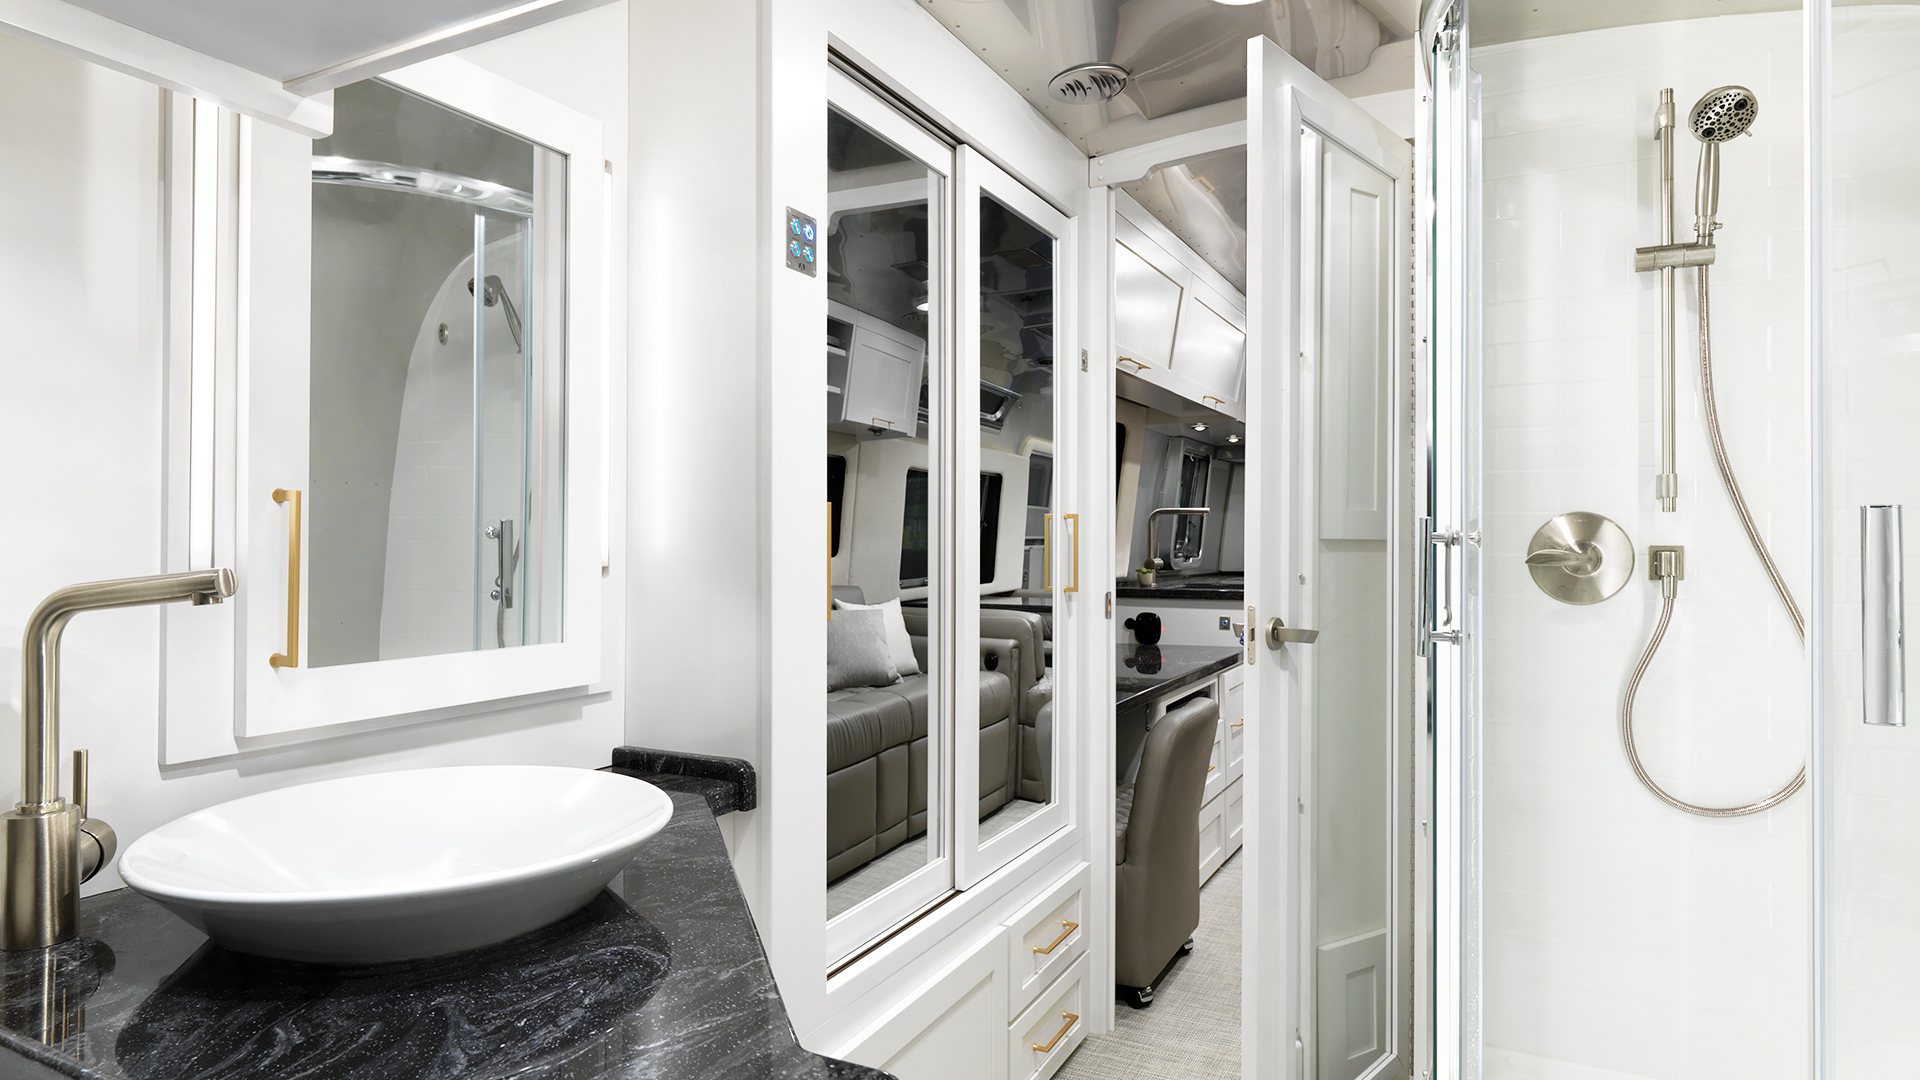 Airstream Introduces “Comfort White” Interior